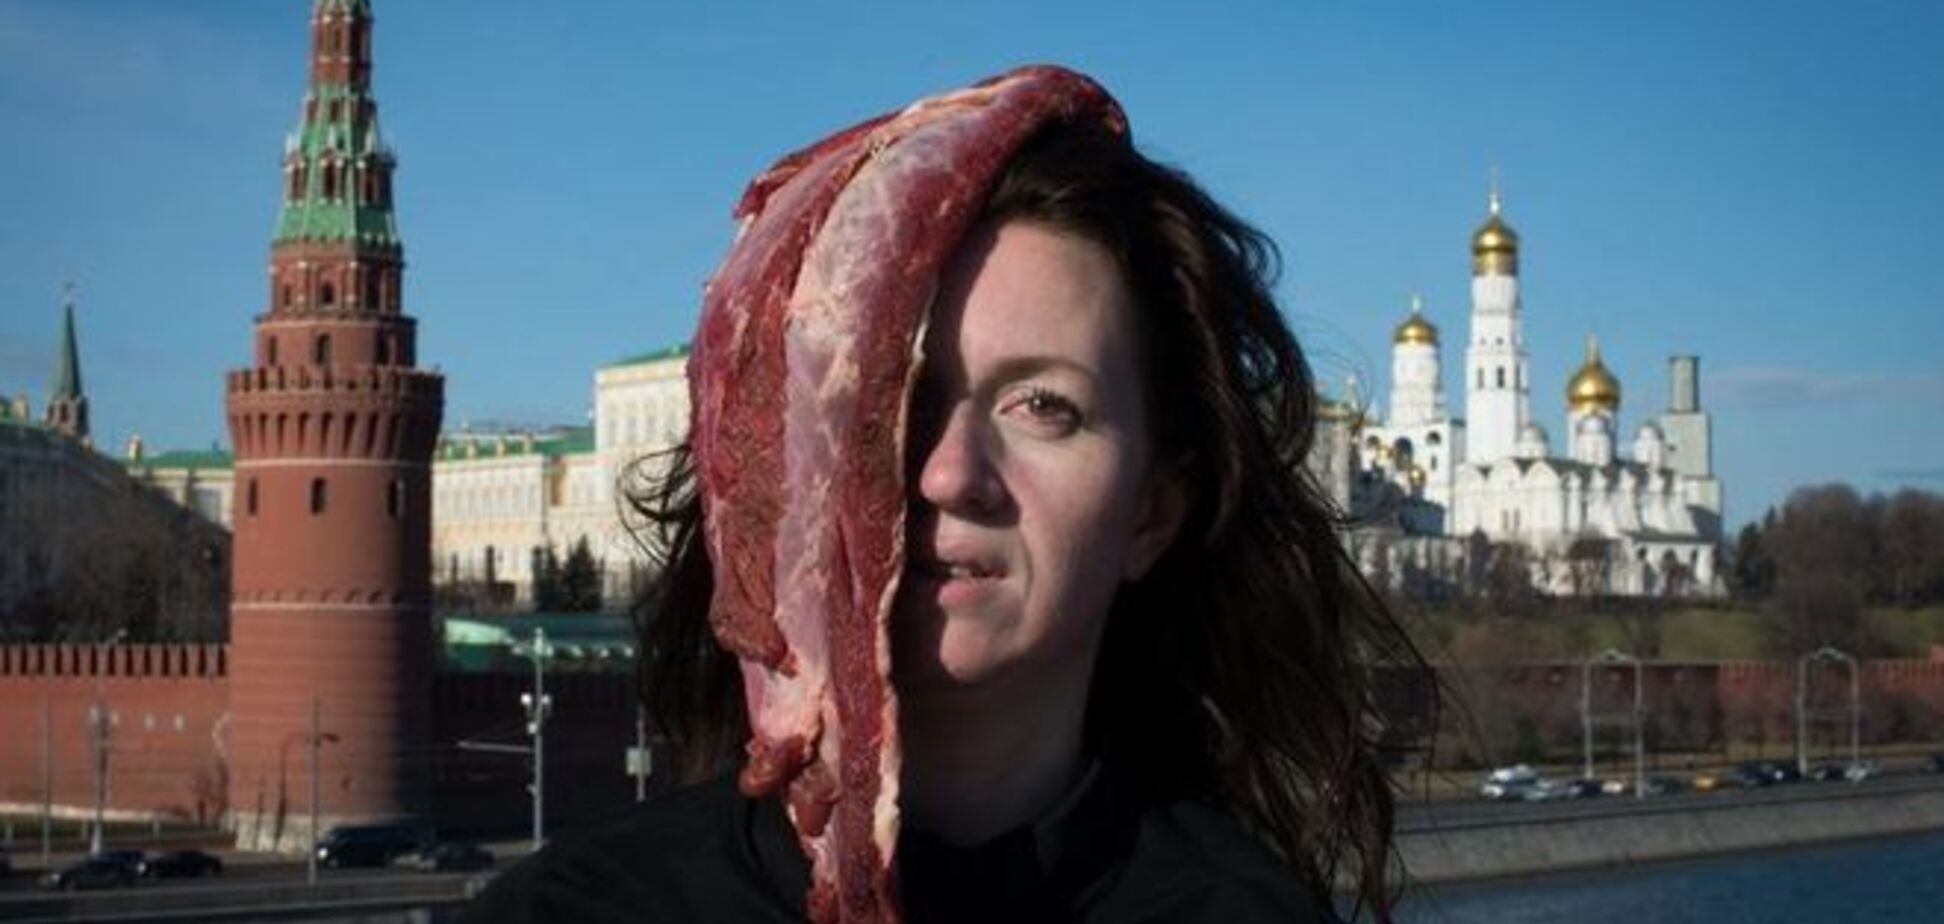 Украинка устроила протест в Москве с куском мяса на голове: видеофакт